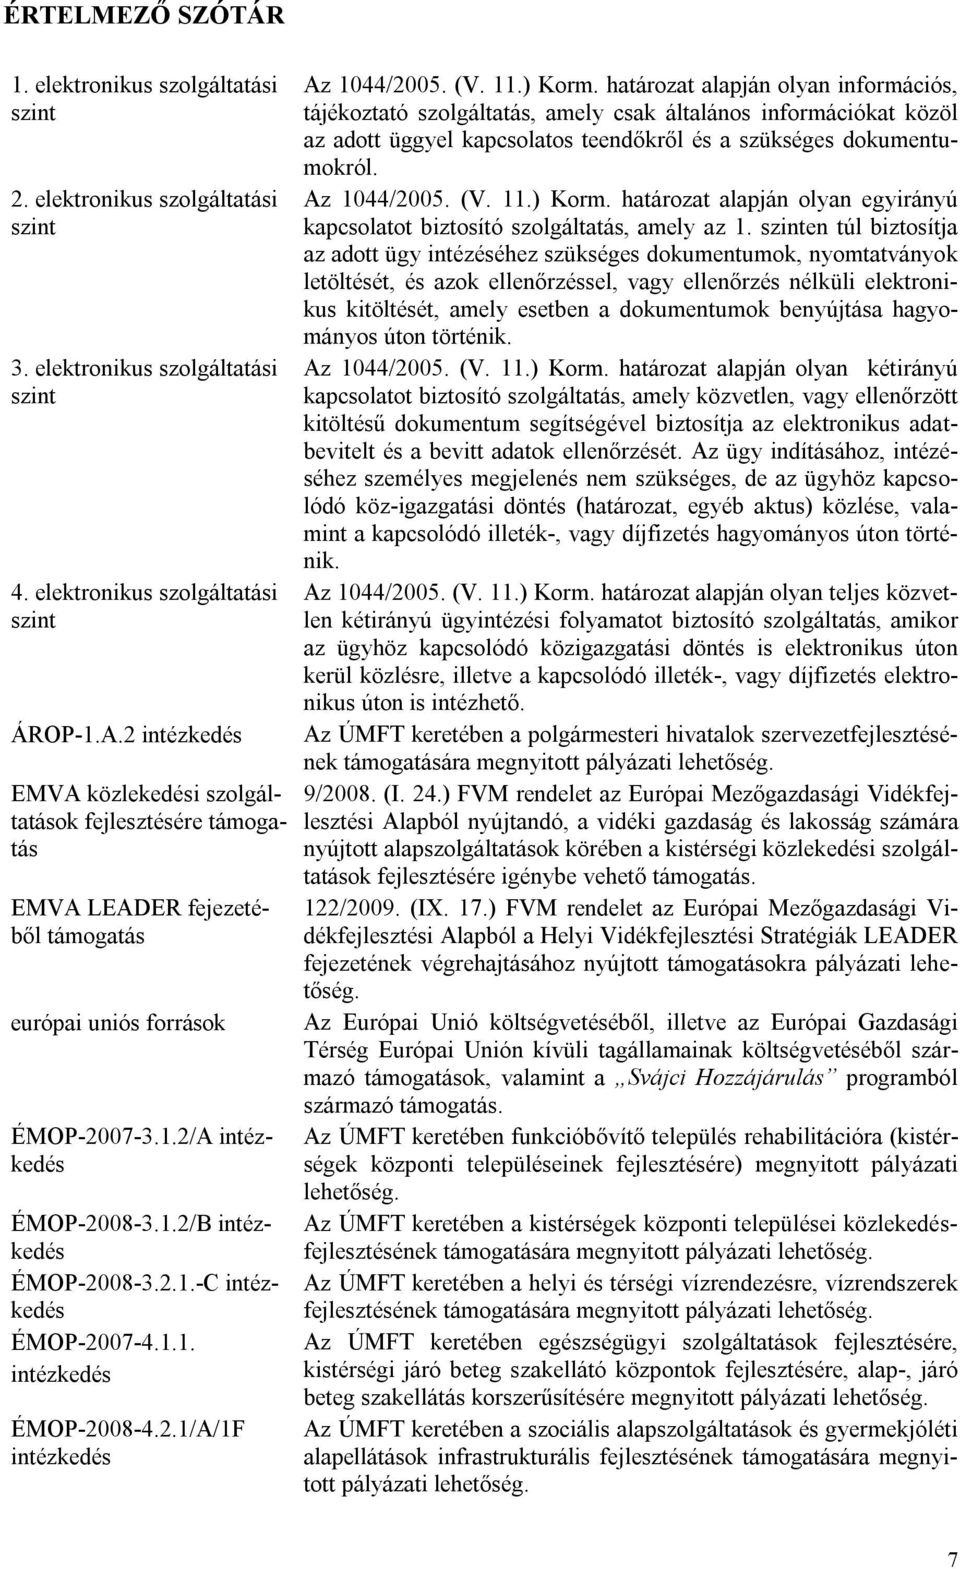 1.1. intézkedés ÉMOP-2008-4.2.1/A/1F intézkedés Az 1044/2005. (V. 11.) Korm.